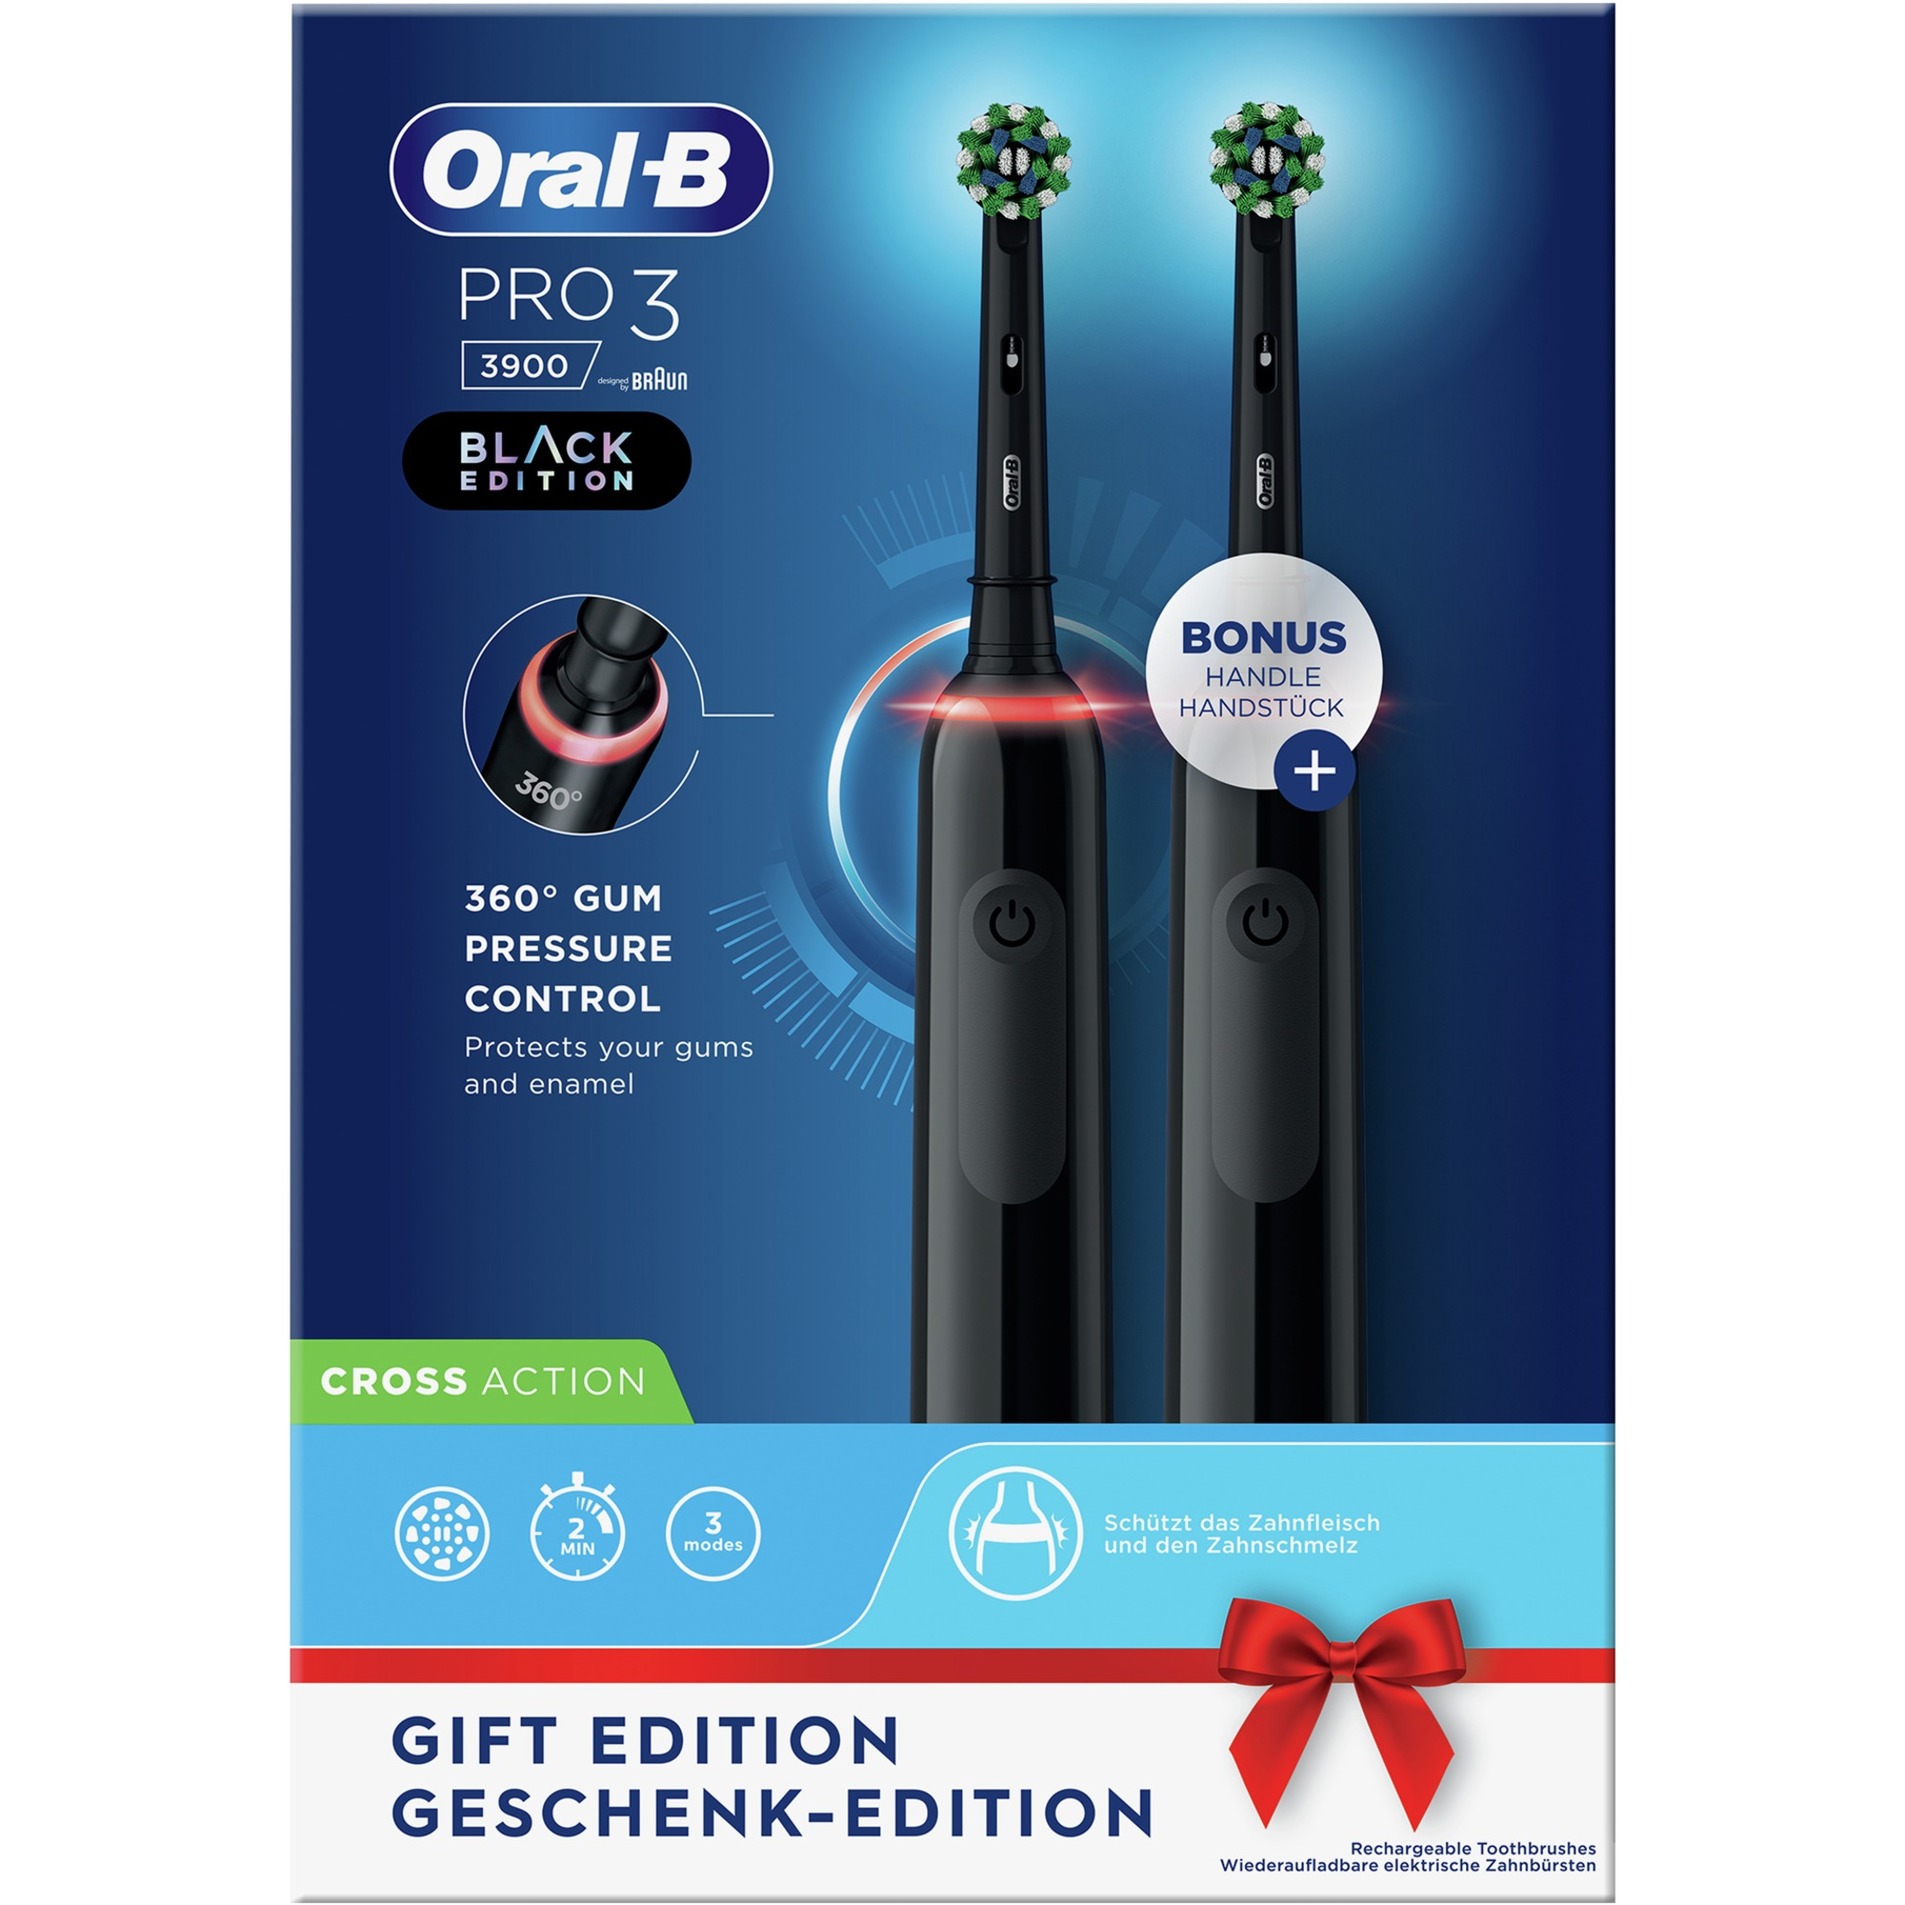 Image of Alternate - Oral-B Pro 3 3900 Black Edition, Elektrische Zahnbürste online einkaufen bei Alternate